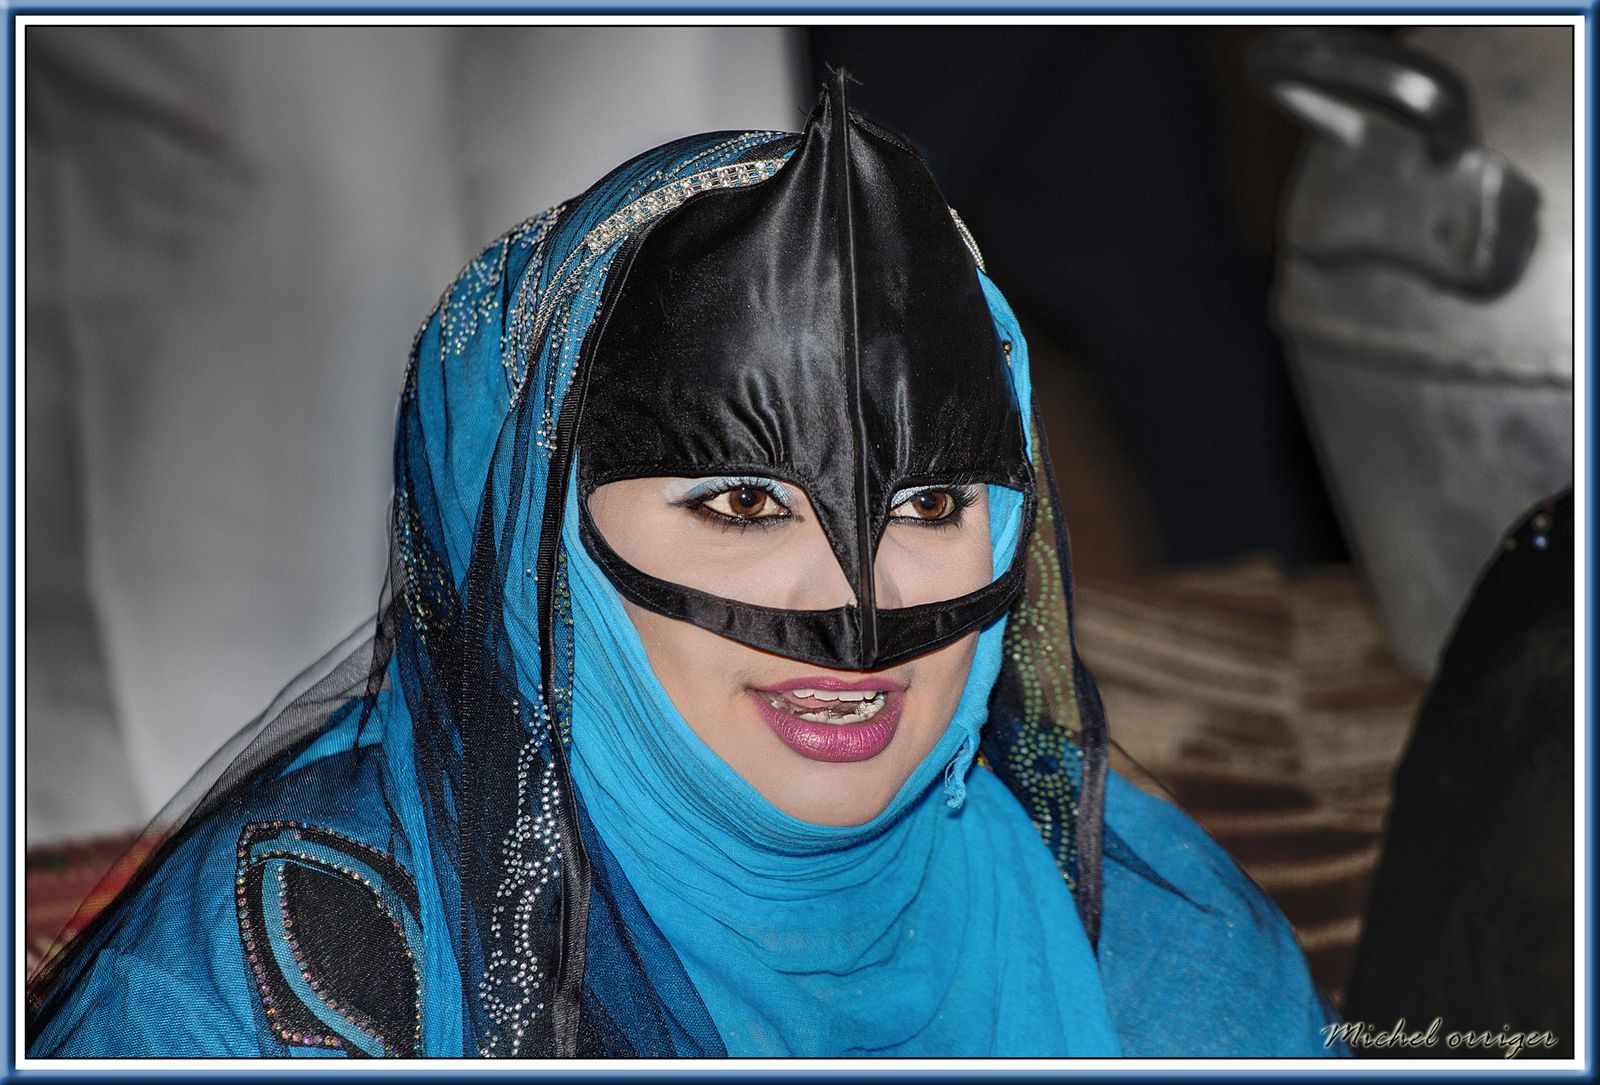 Femmes de bédoins au Sultanat d'Oman - Le blog de Michel Orriger